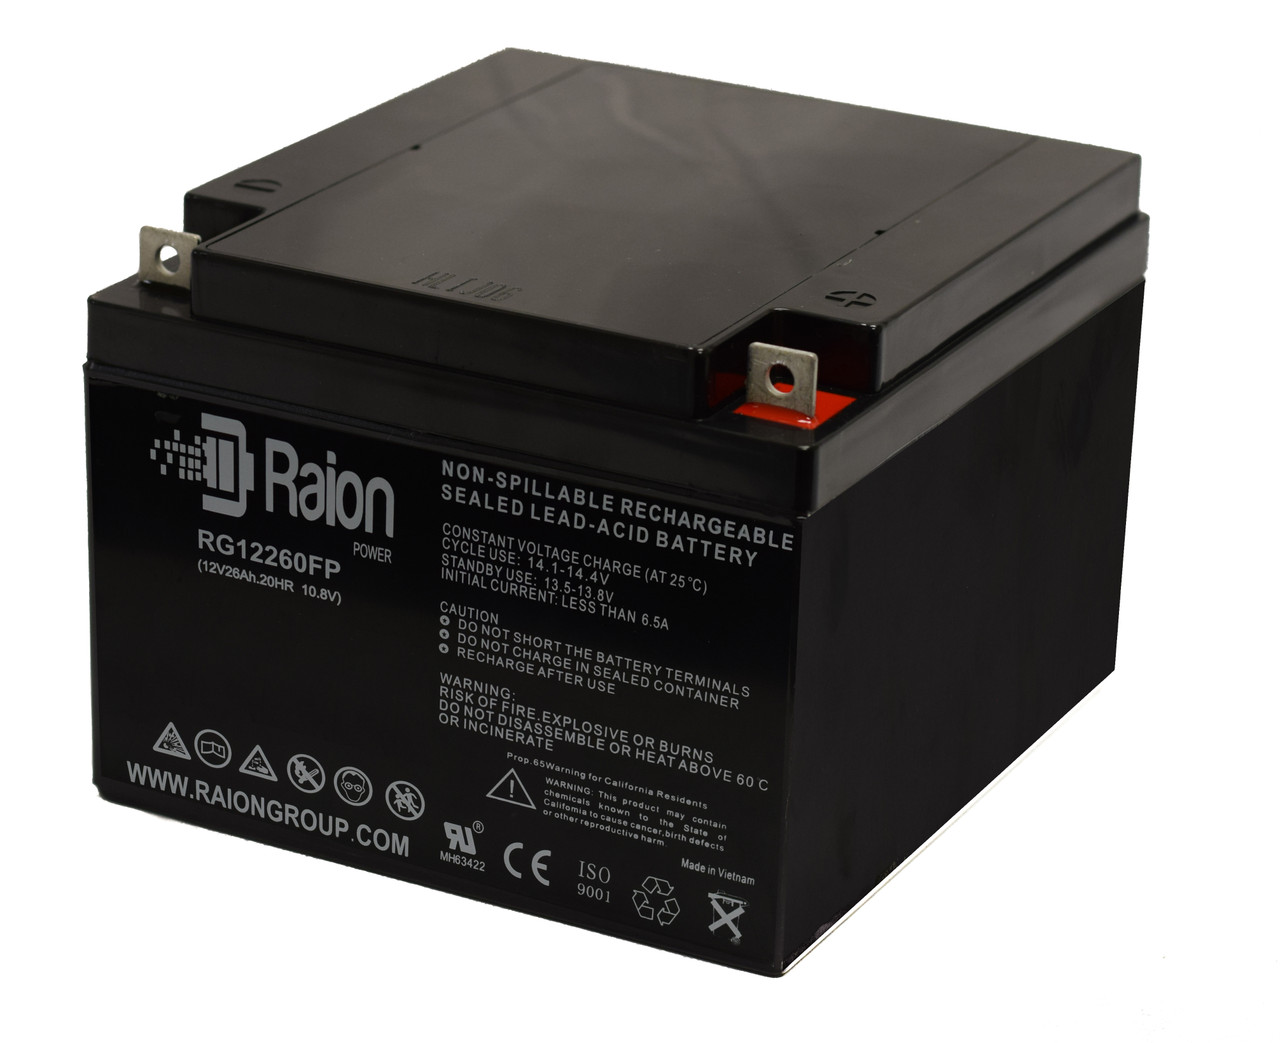 Raion Power Replacement 12V 26Ah Battery for BatteryMart SLA-12V26 - 1 Pack